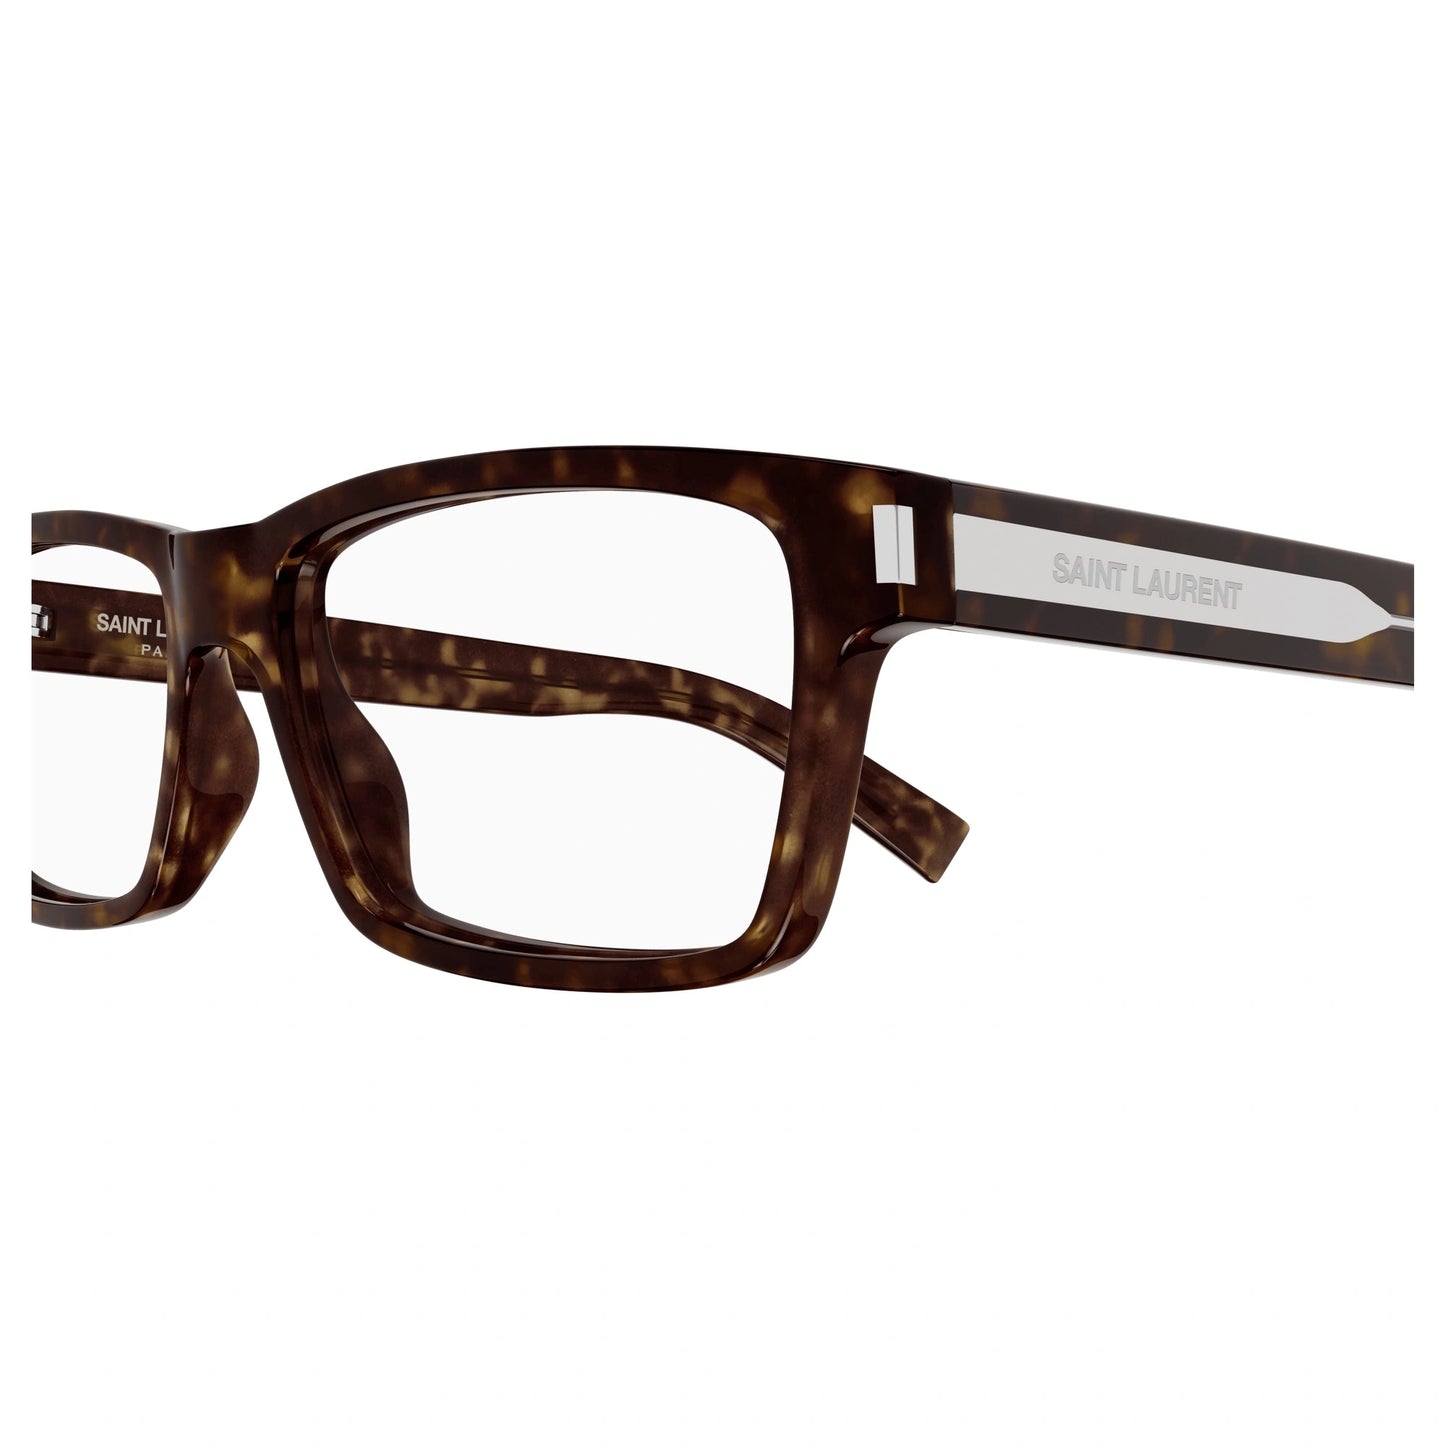 Yvest Saint Laurent SL-622-008 58mm New Eyeglasses